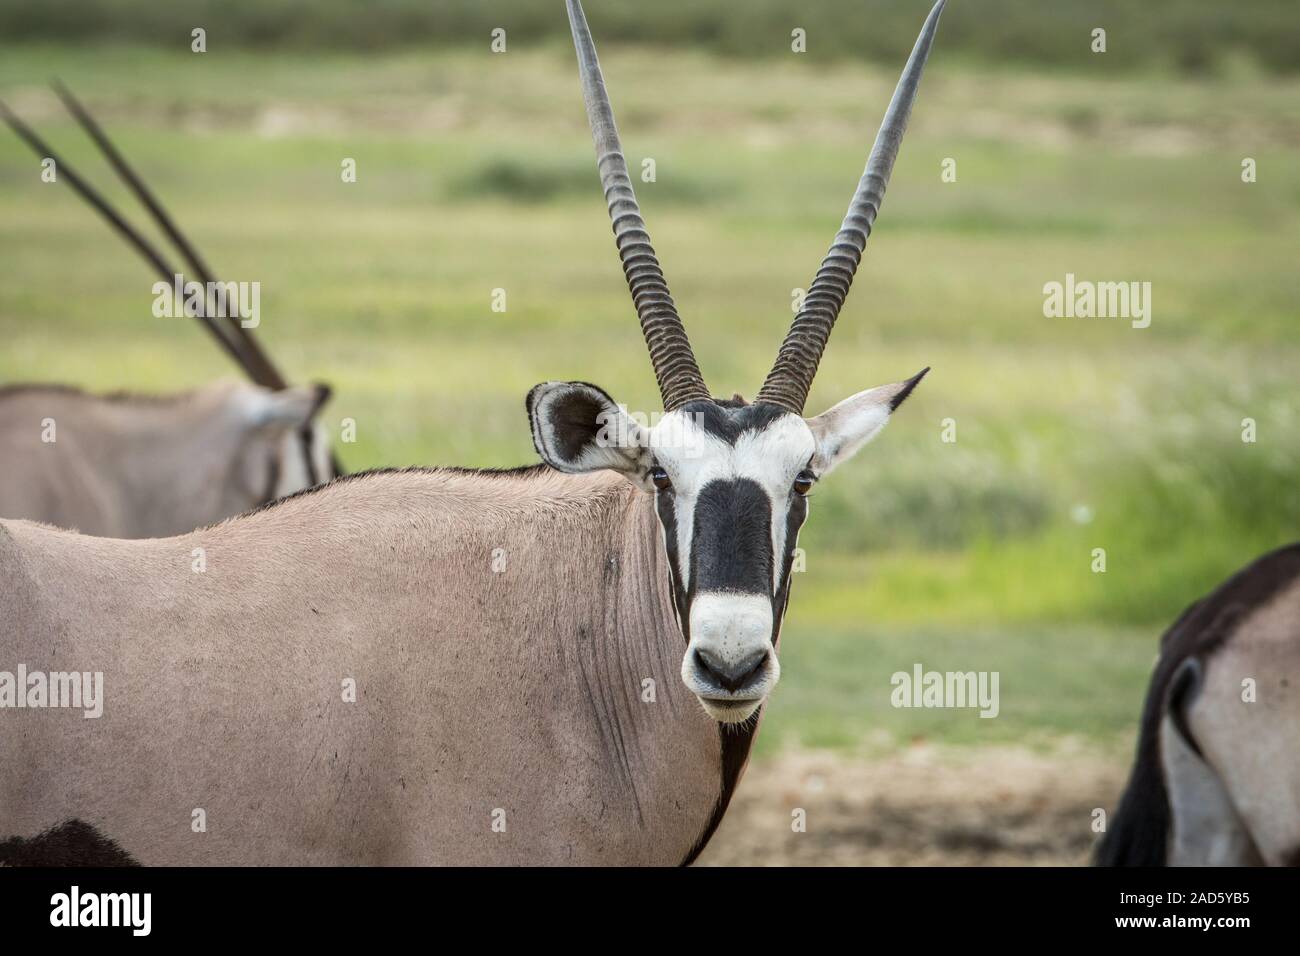 Oryx starring in die Kamera. Stockfoto